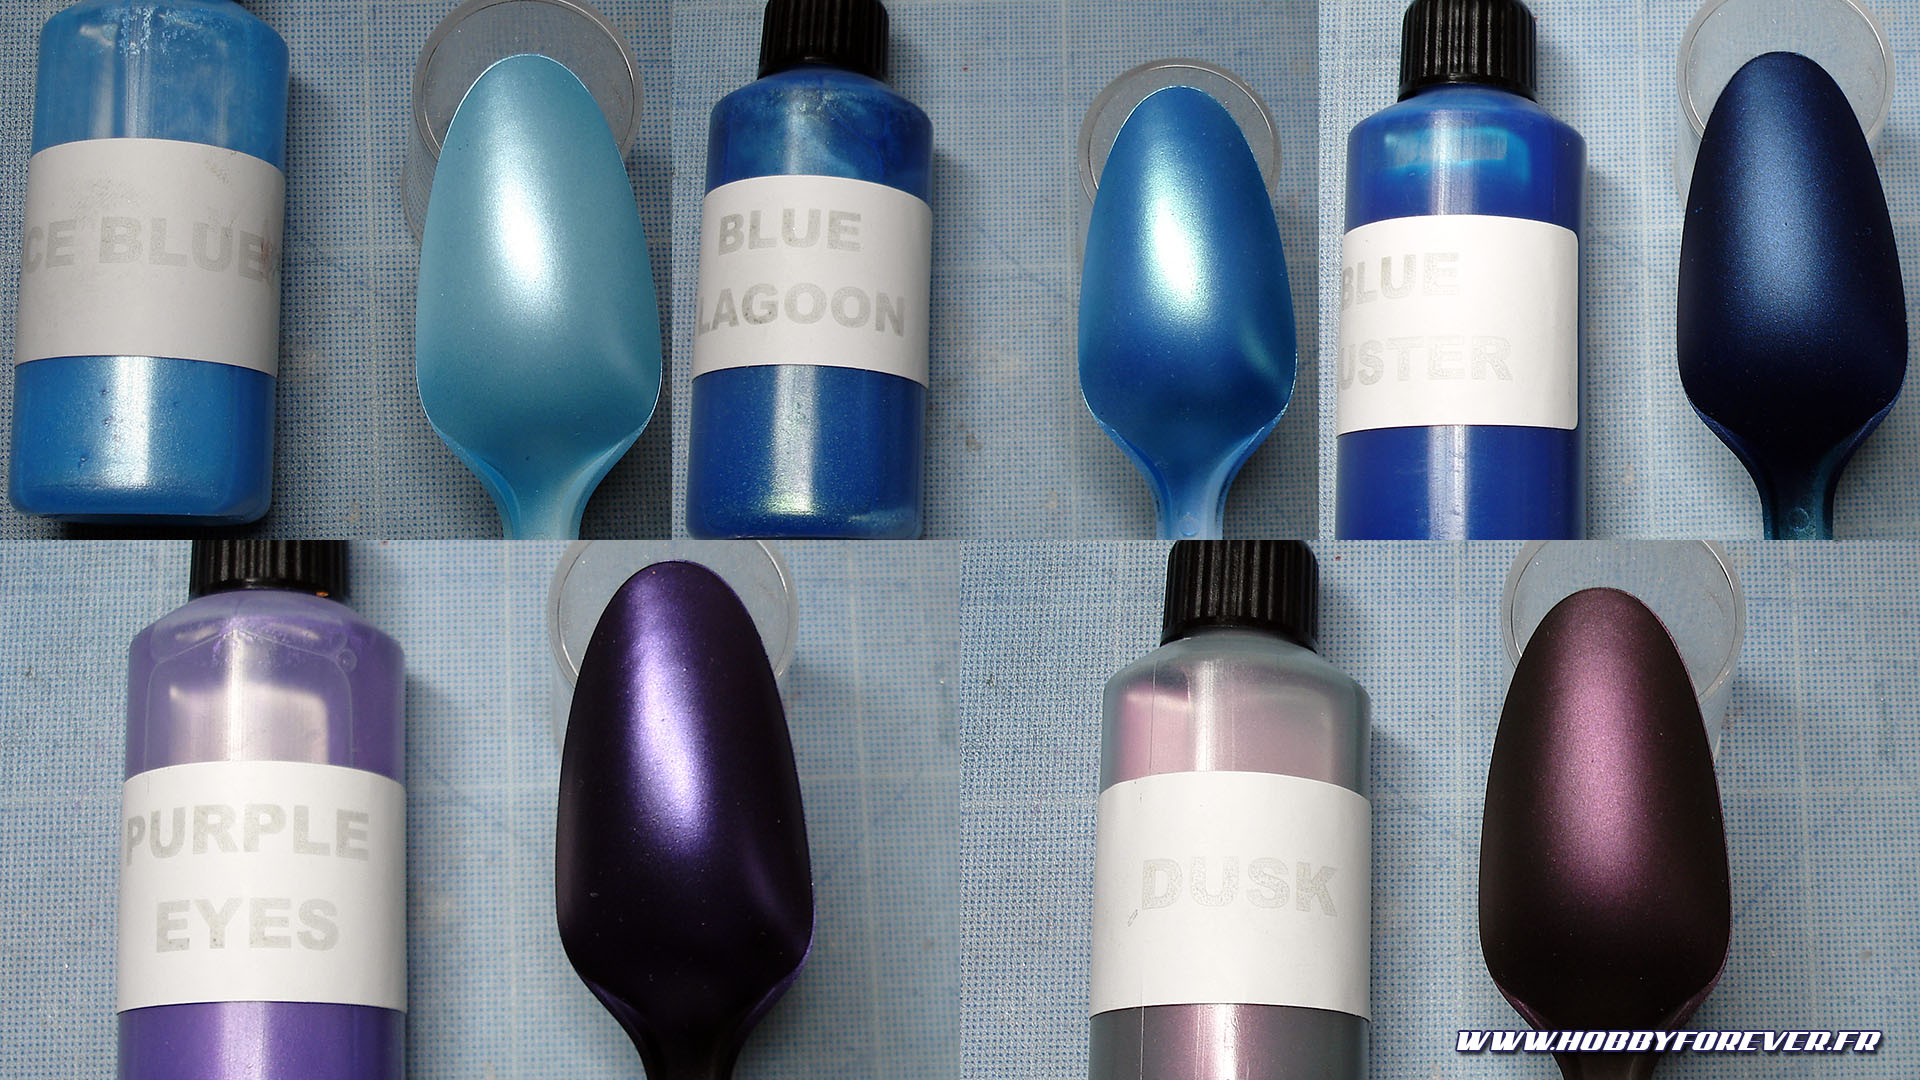 Ice Blue / Blue Lagoon / Blue Luster / Purple Eyes / Dusk